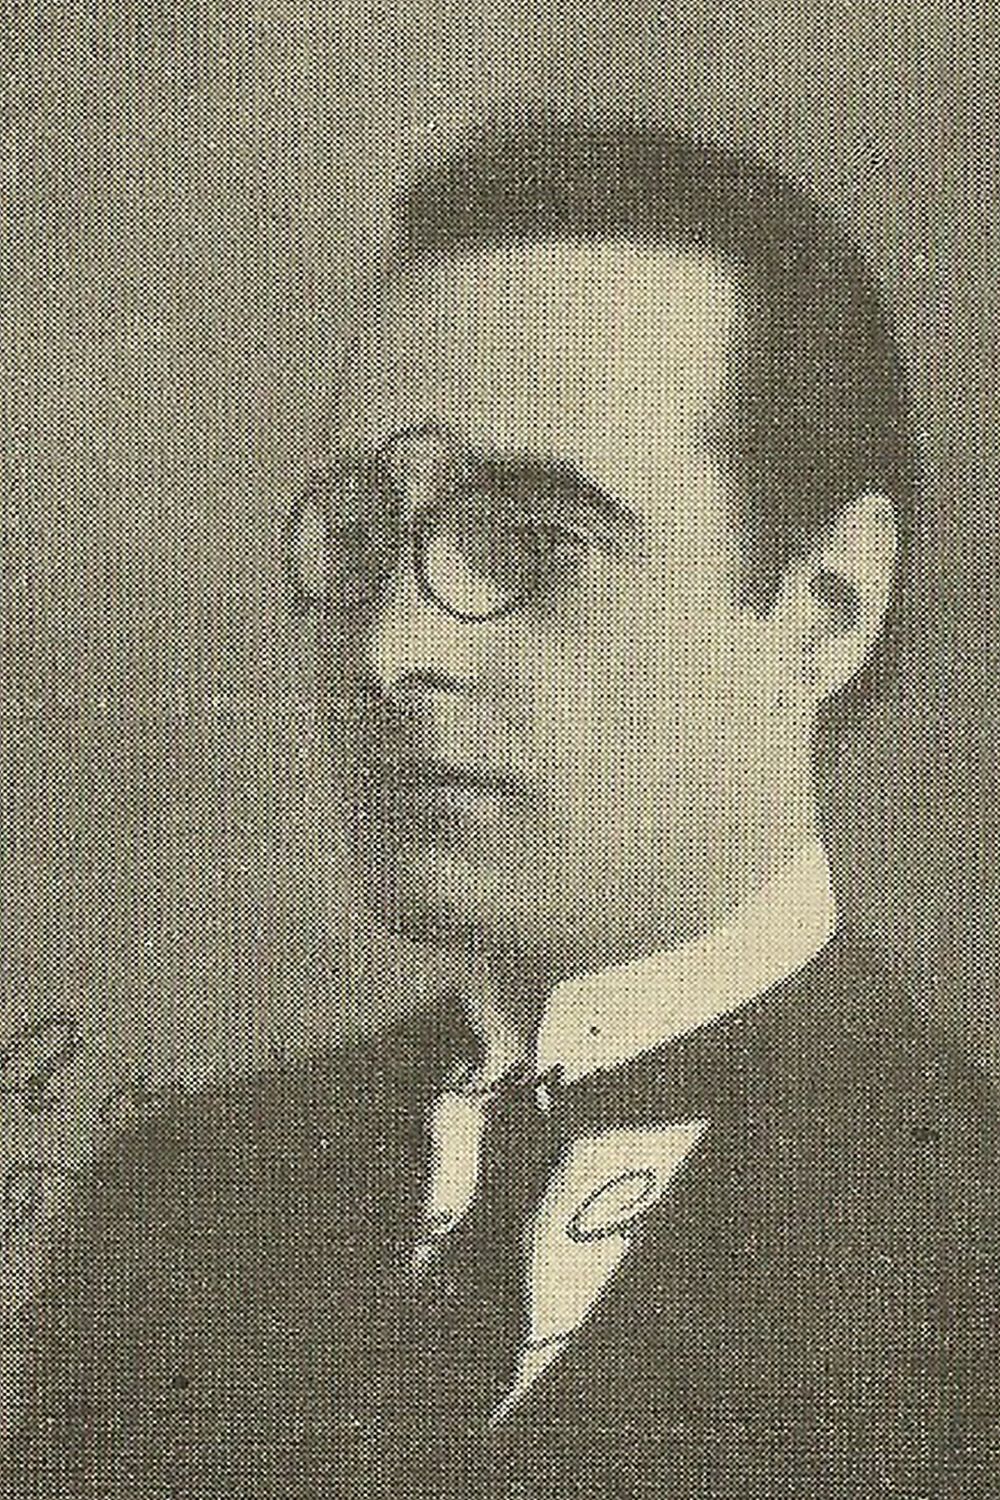 Juan Andrés Caruso, letrista de nuestro Tango.